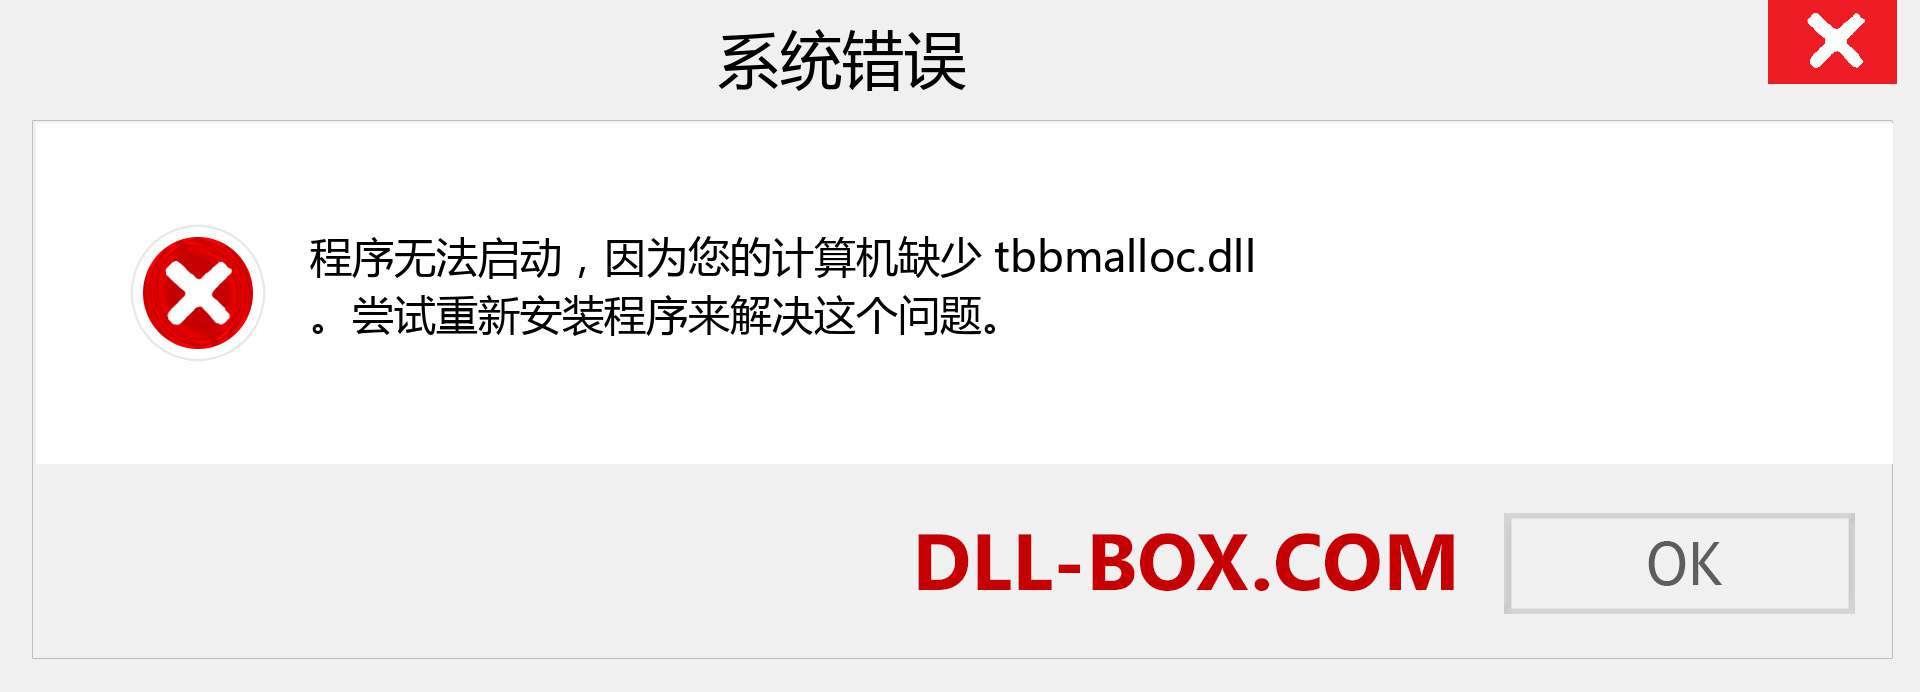 tbbmalloc.dll 文件丢失？。 适用于 Windows 7、8、10 的下载 - 修复 Windows、照片、图像上的 tbbmalloc dll 丢失错误